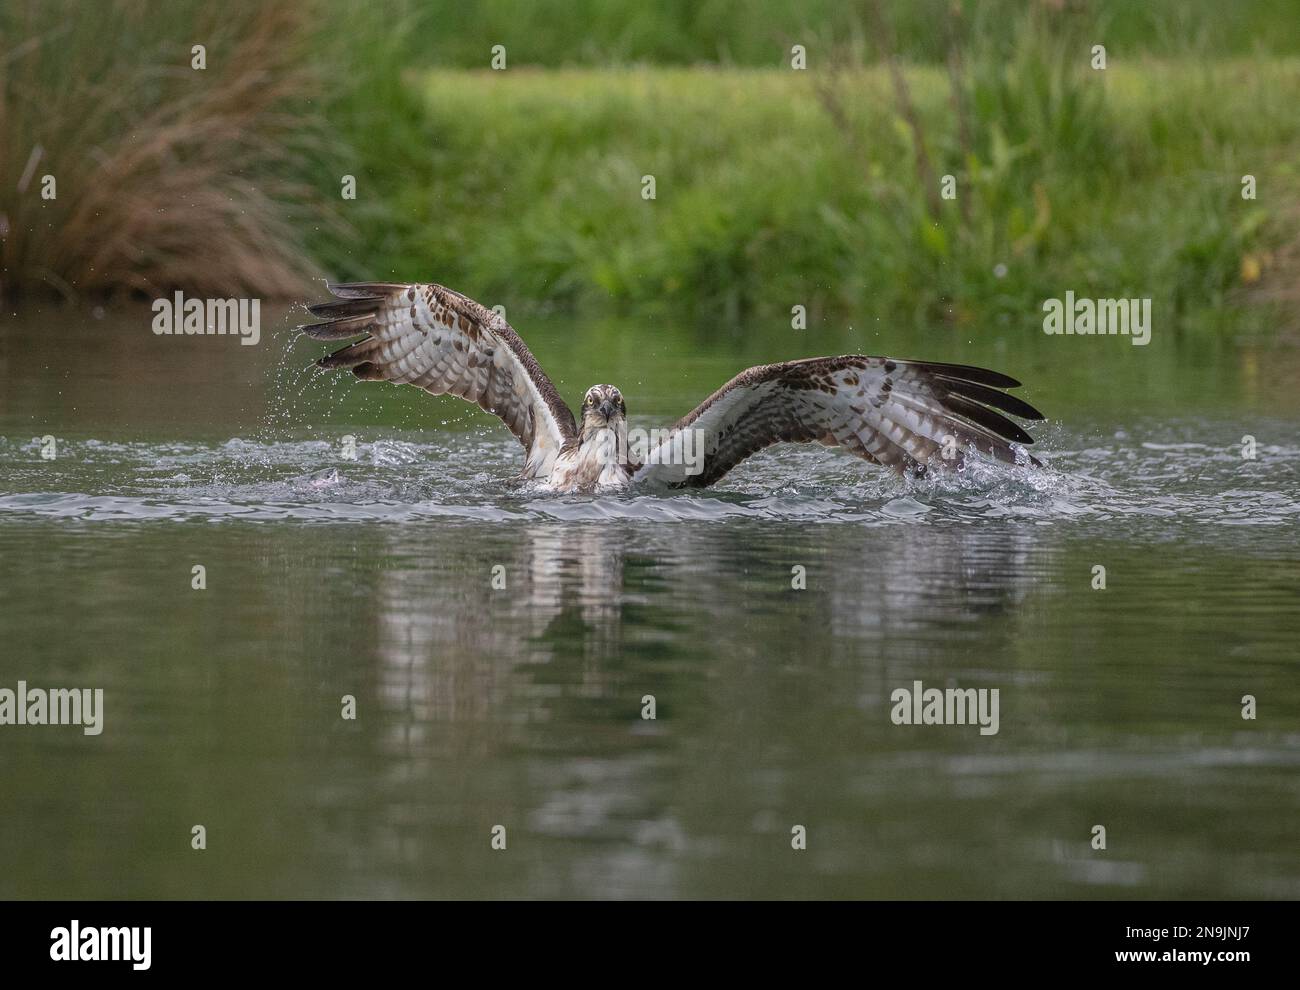 Colpo d'azione di un Osprey (Pandion haliaetus) mezzo sommerso . ali allungate, cercando di alzarsi dall'acqua con una grande trota . Rutland, Regno Unito Foto Stock